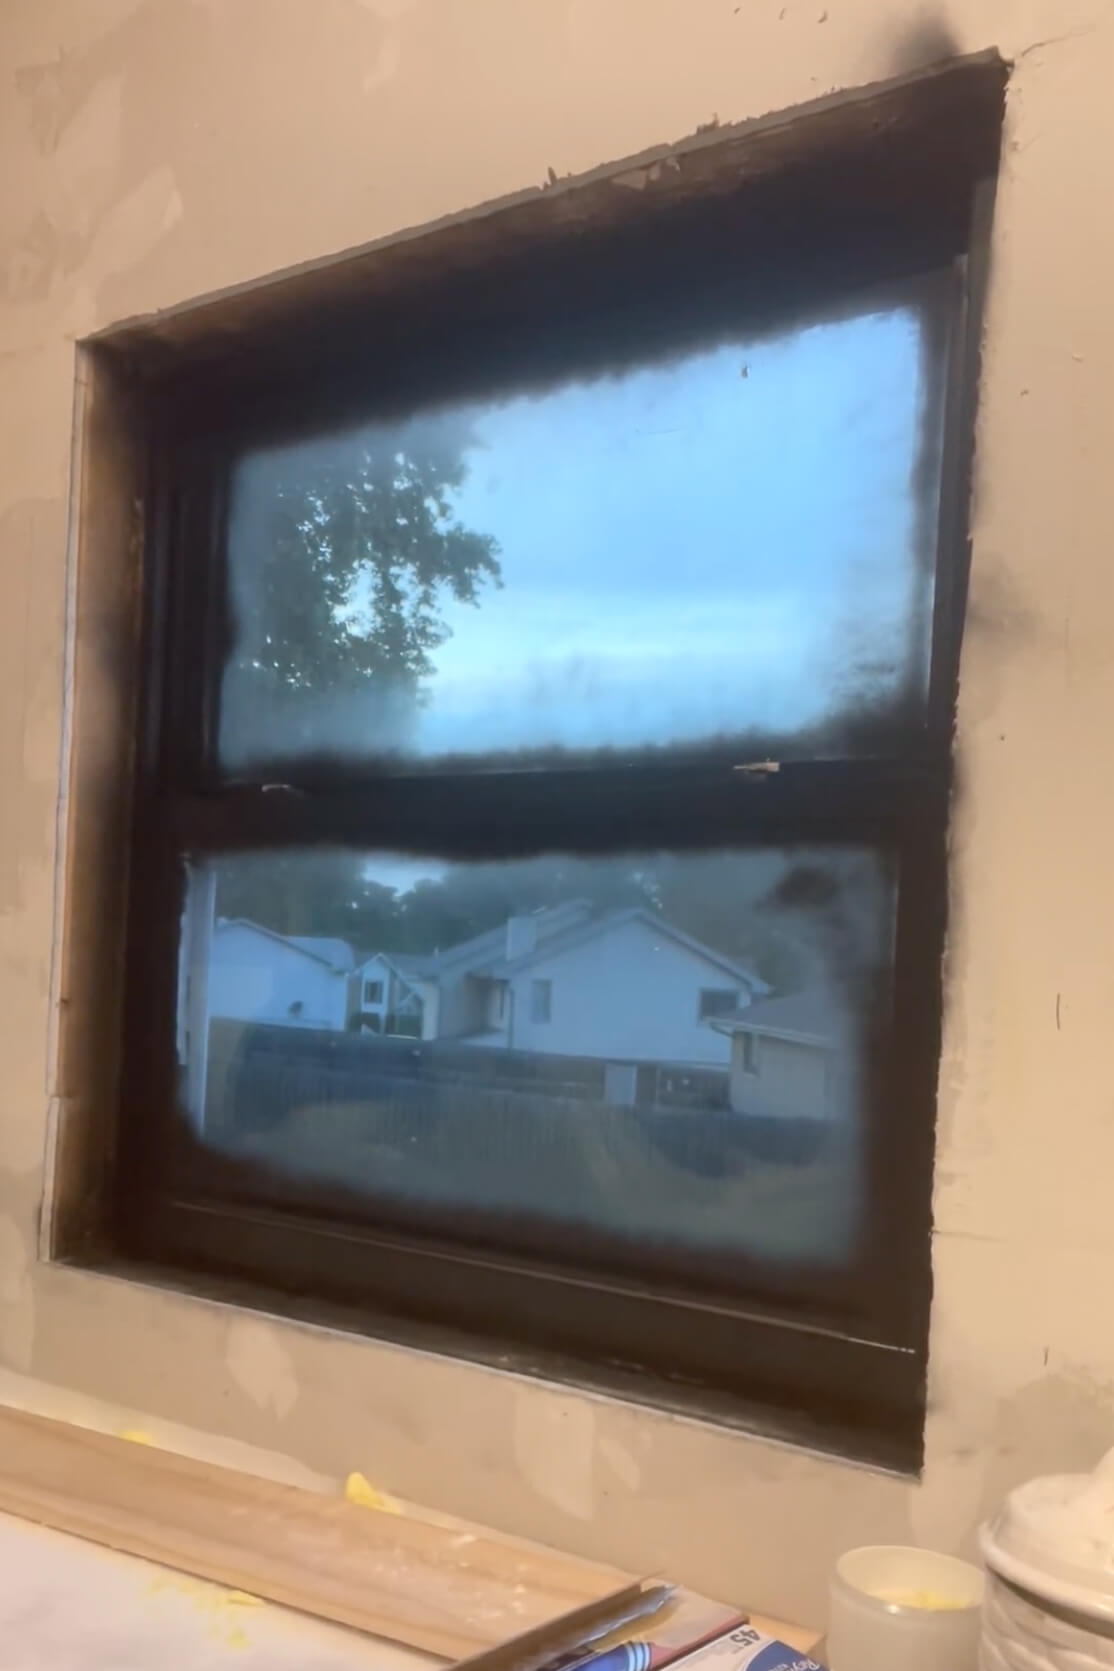 Use spray paint to make windows black.